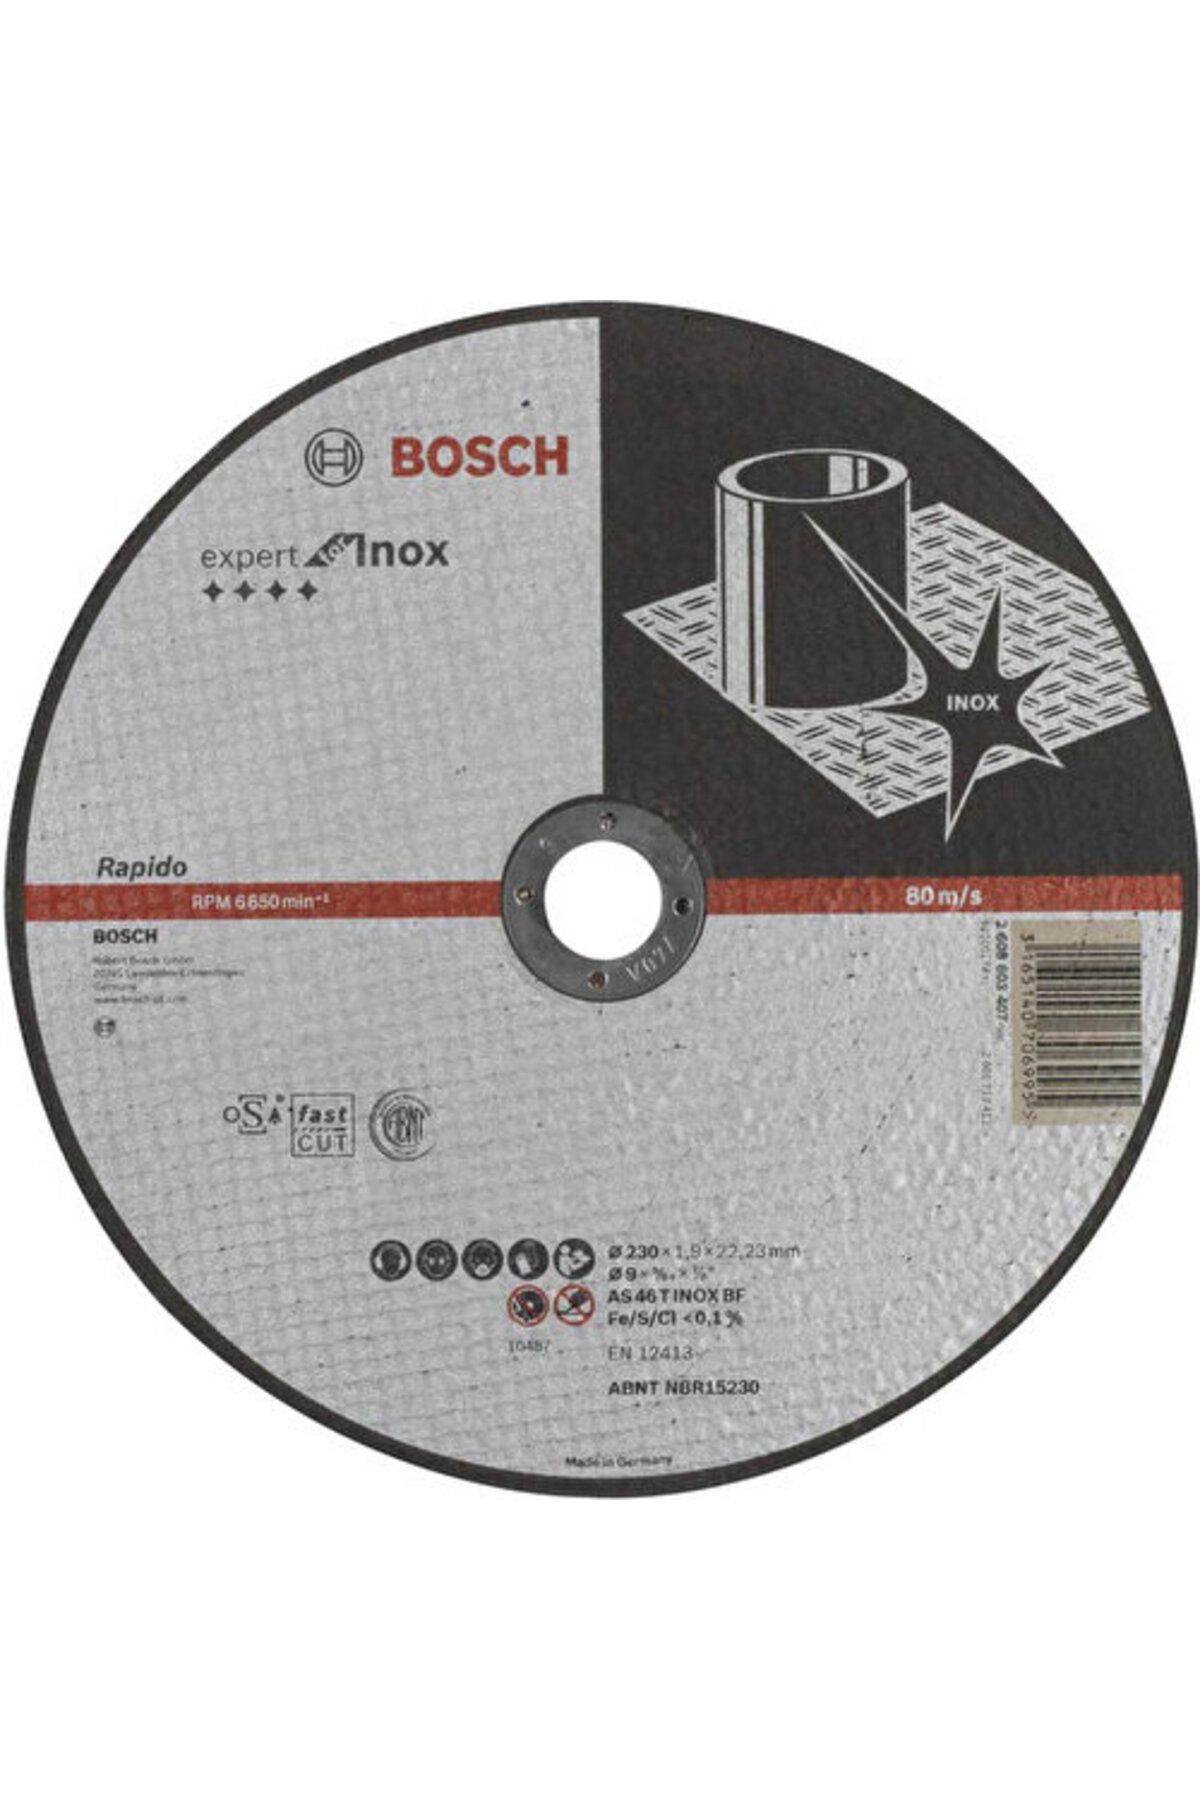 Bosch - 230*1,9 Mm Expert Serisi Düz Inox (PASLANMAZ ÇELİK) Kesme Diski (TAŞ) - Rapido